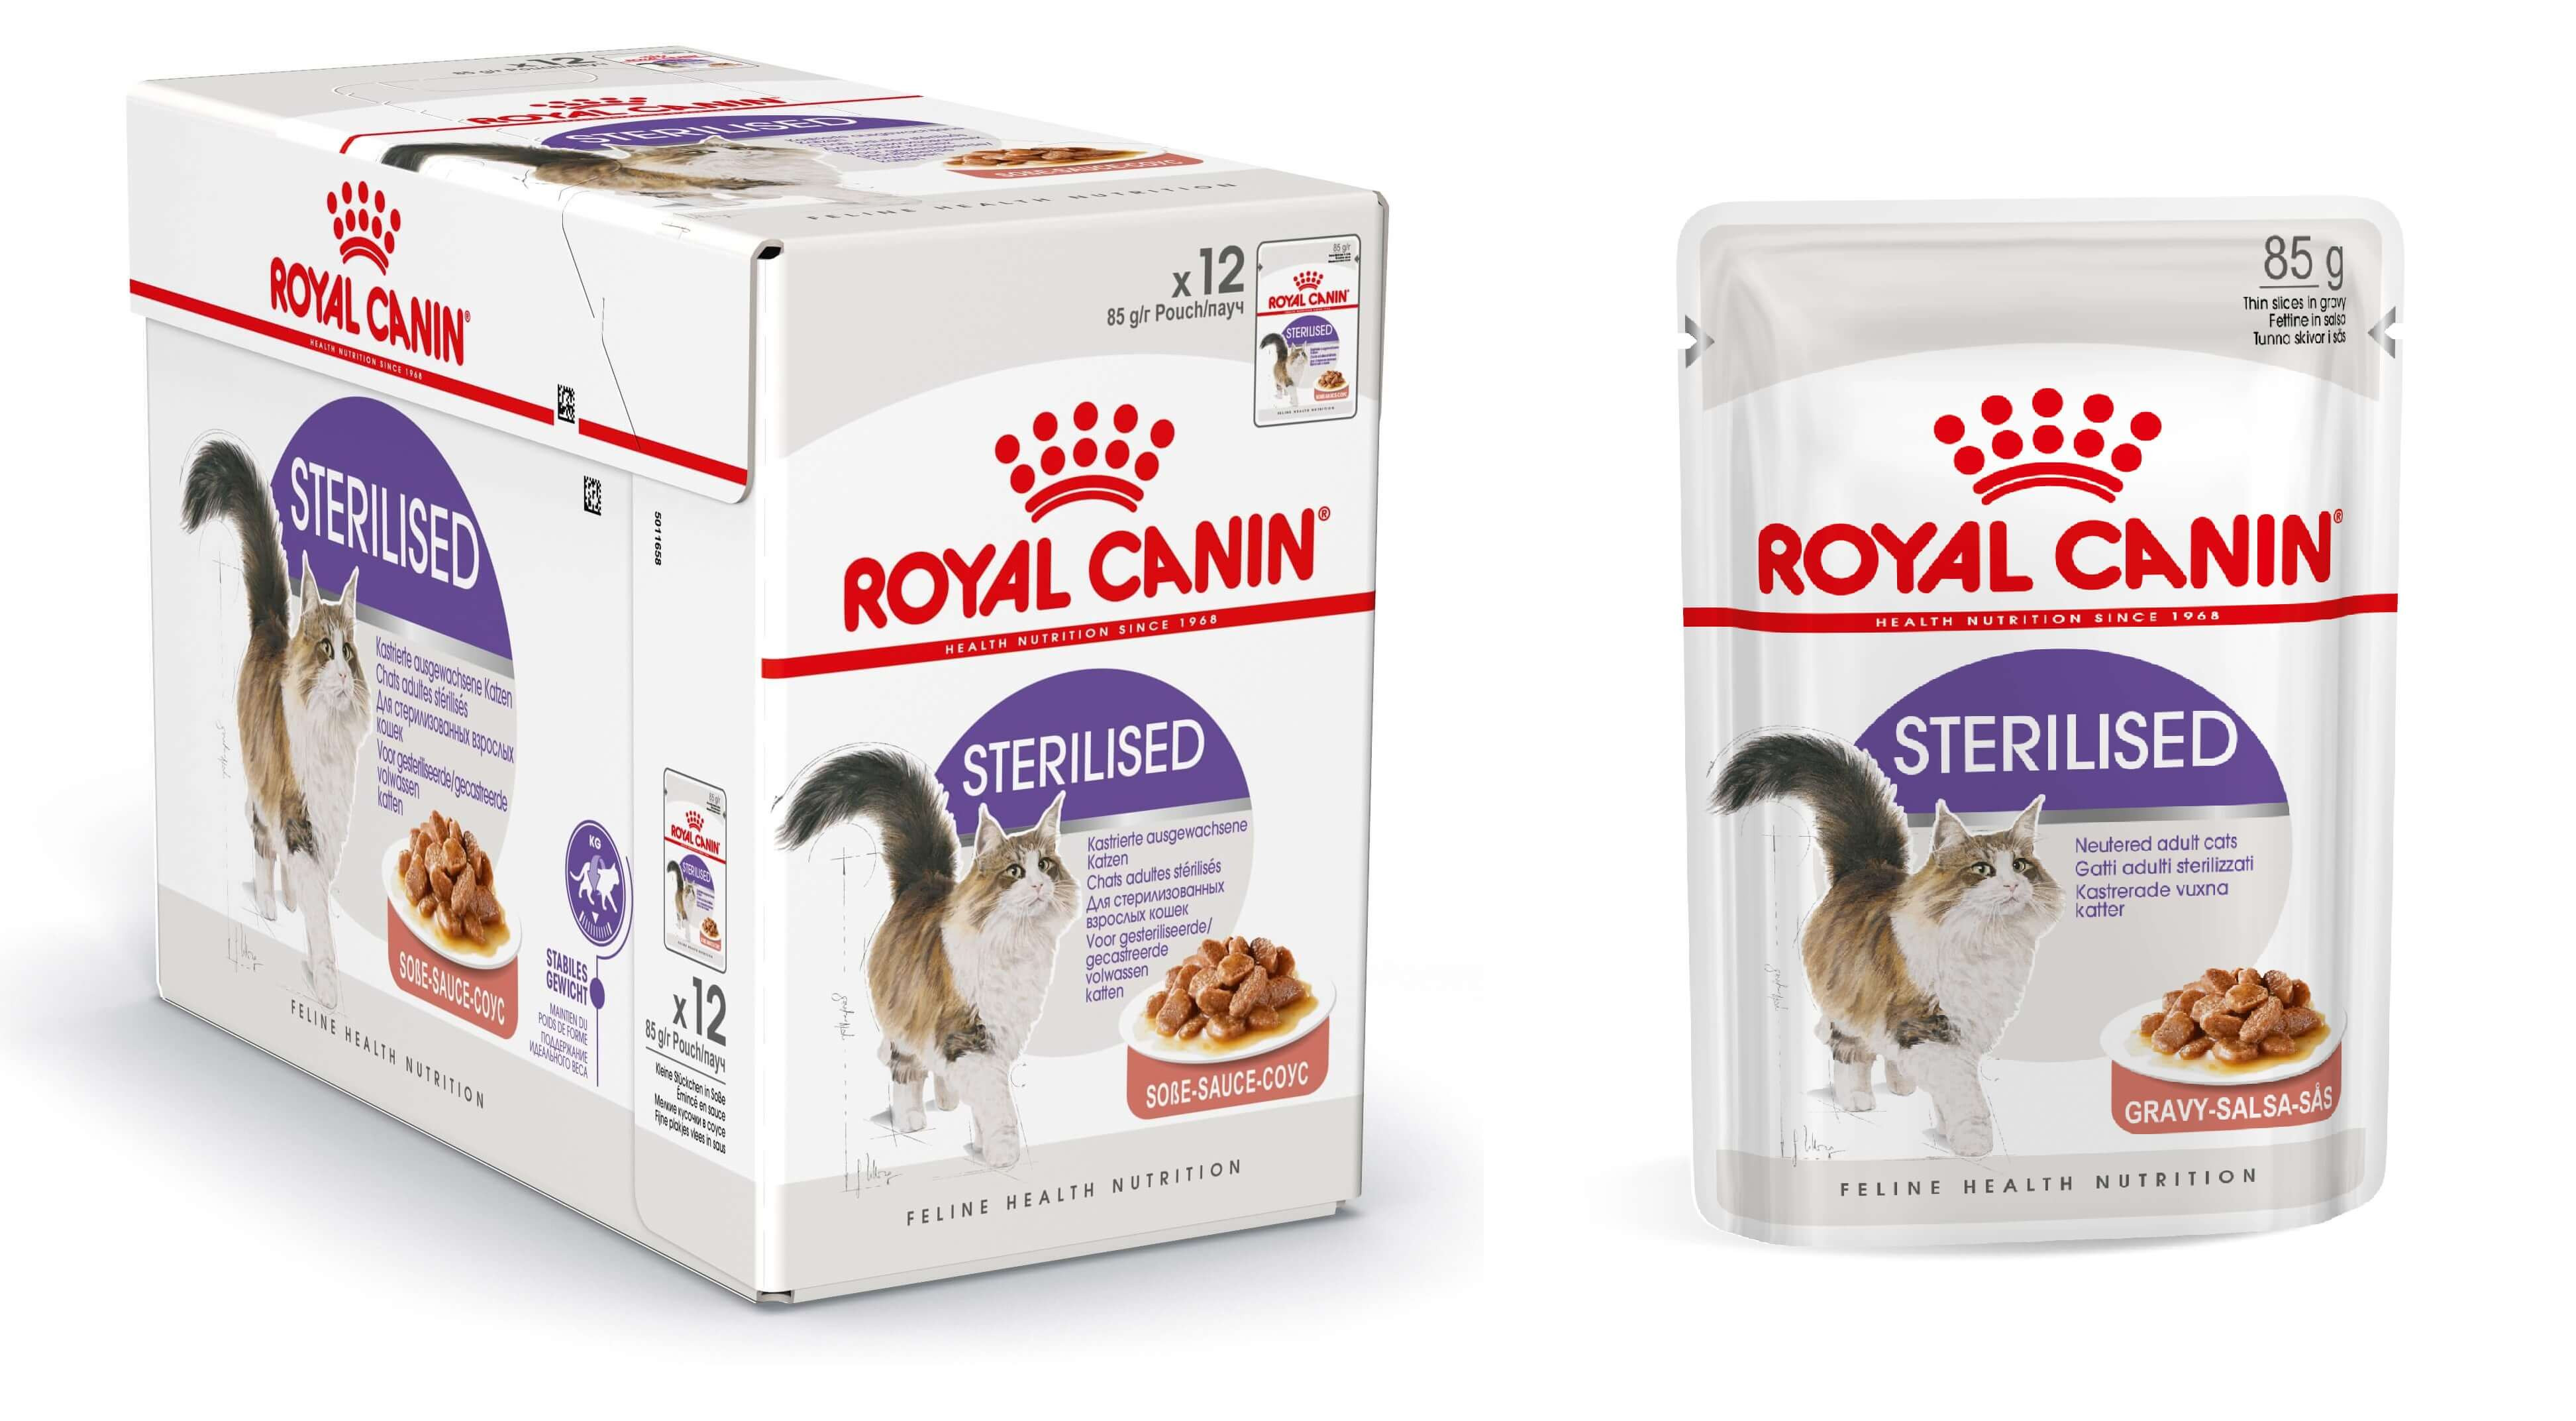 Royal Canin Sterilised cibo umido per gatto x12